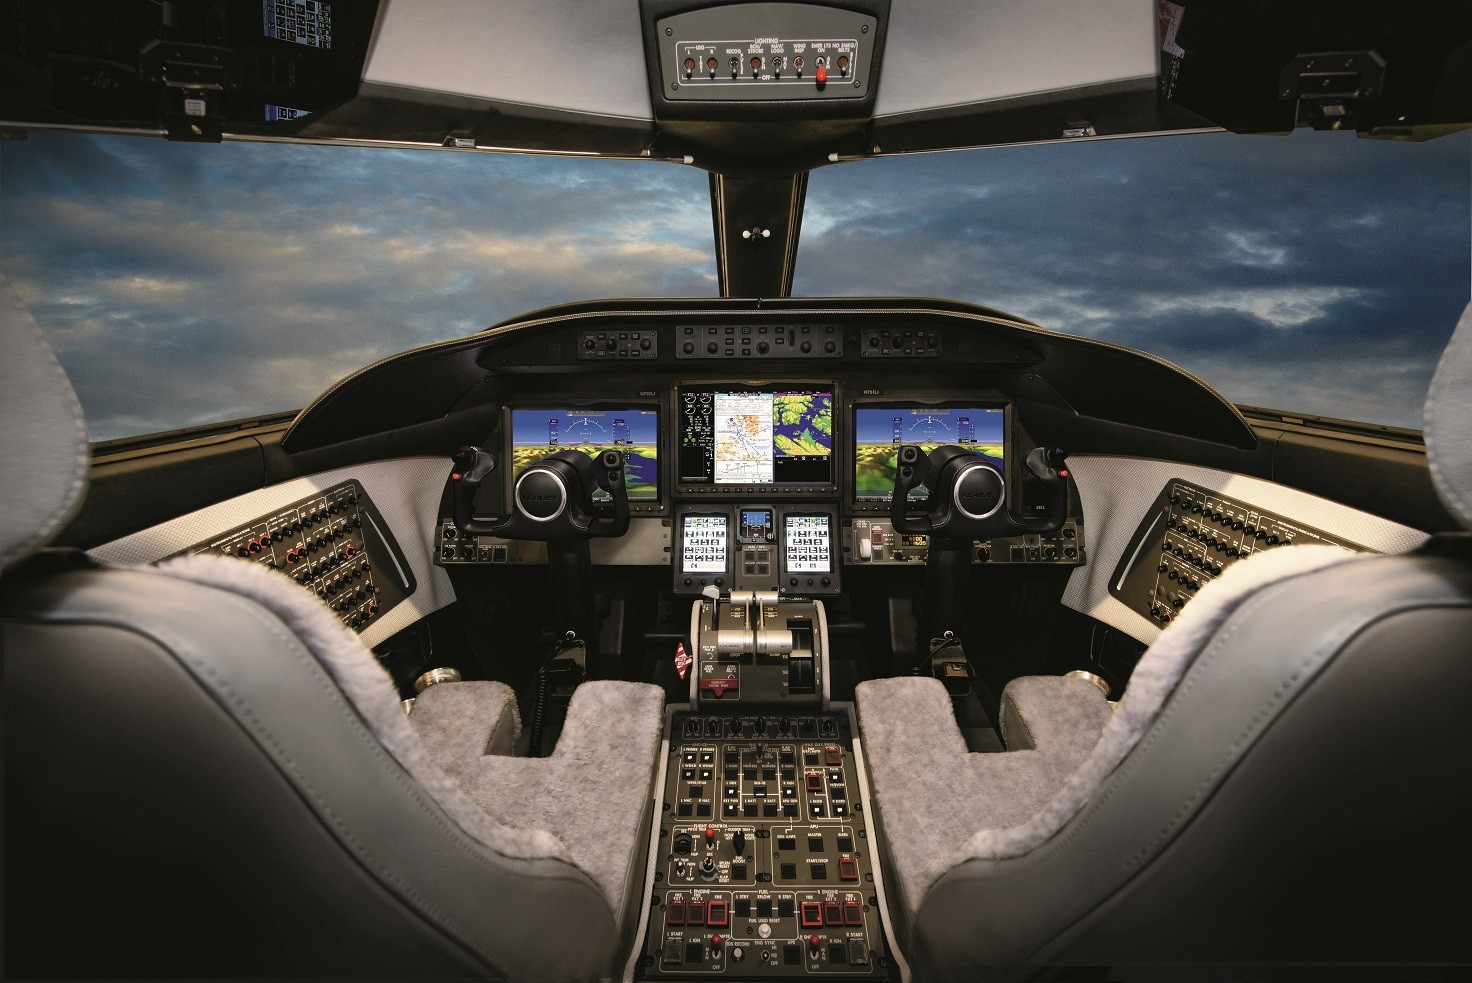 The flight deck inside the Learjet 75’s cockpit.